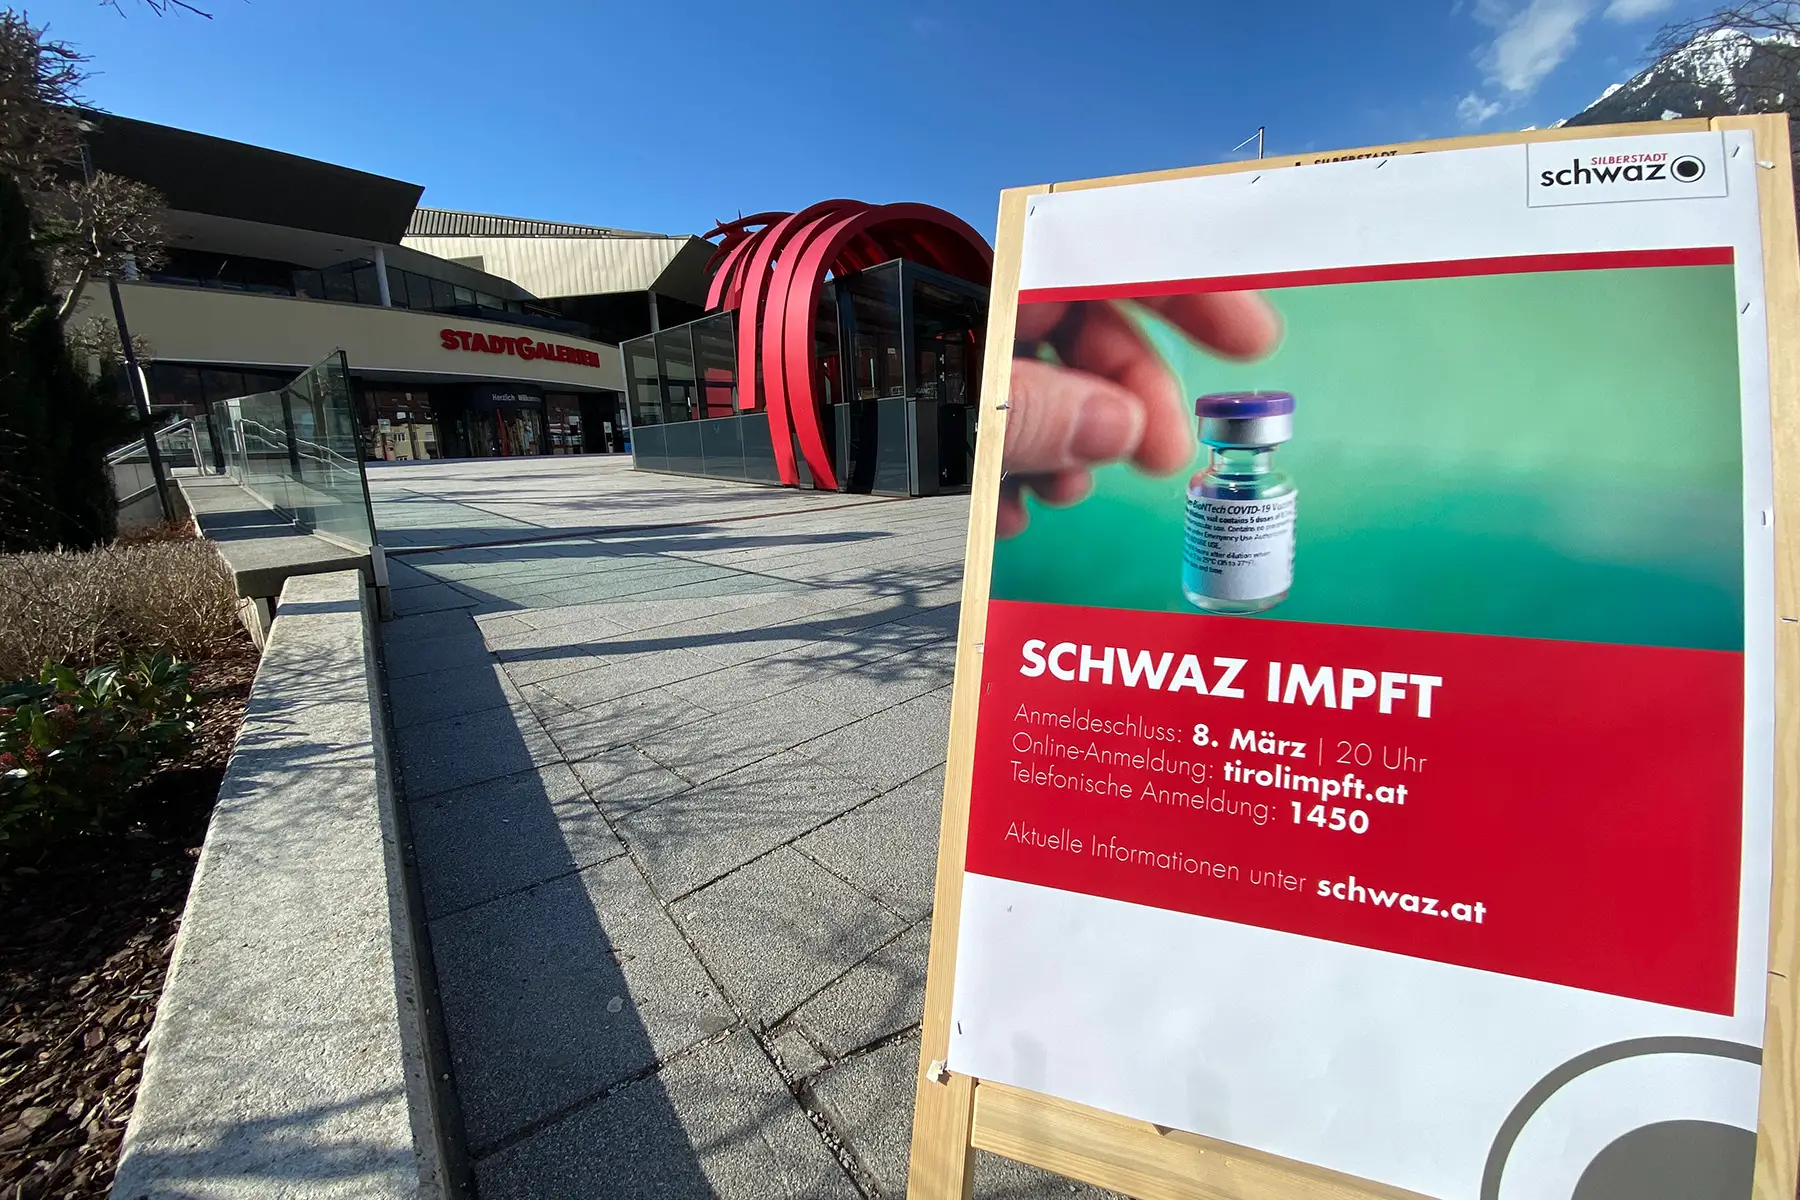 Covid-19 vaccination in Austria